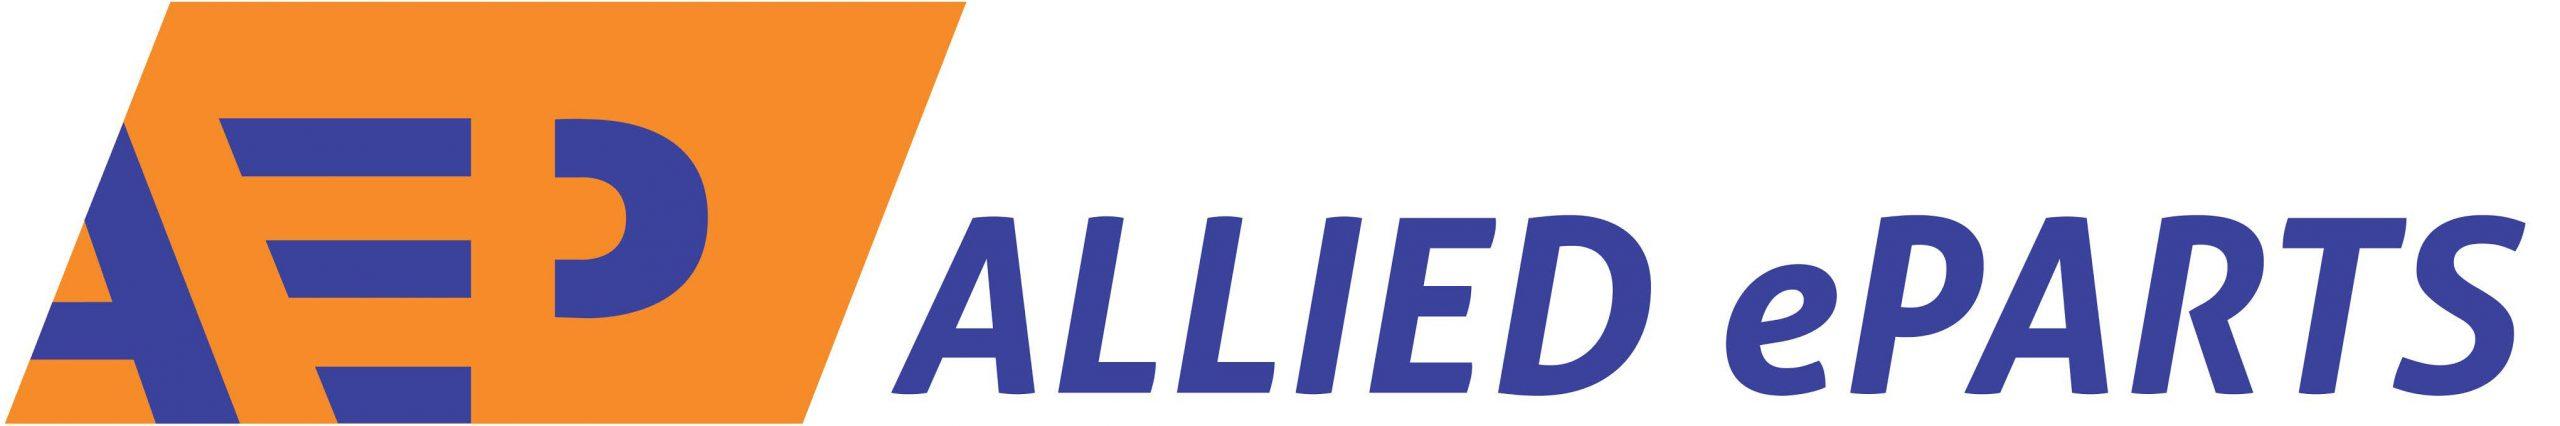 Allied Eparts Pte Ltd Logo